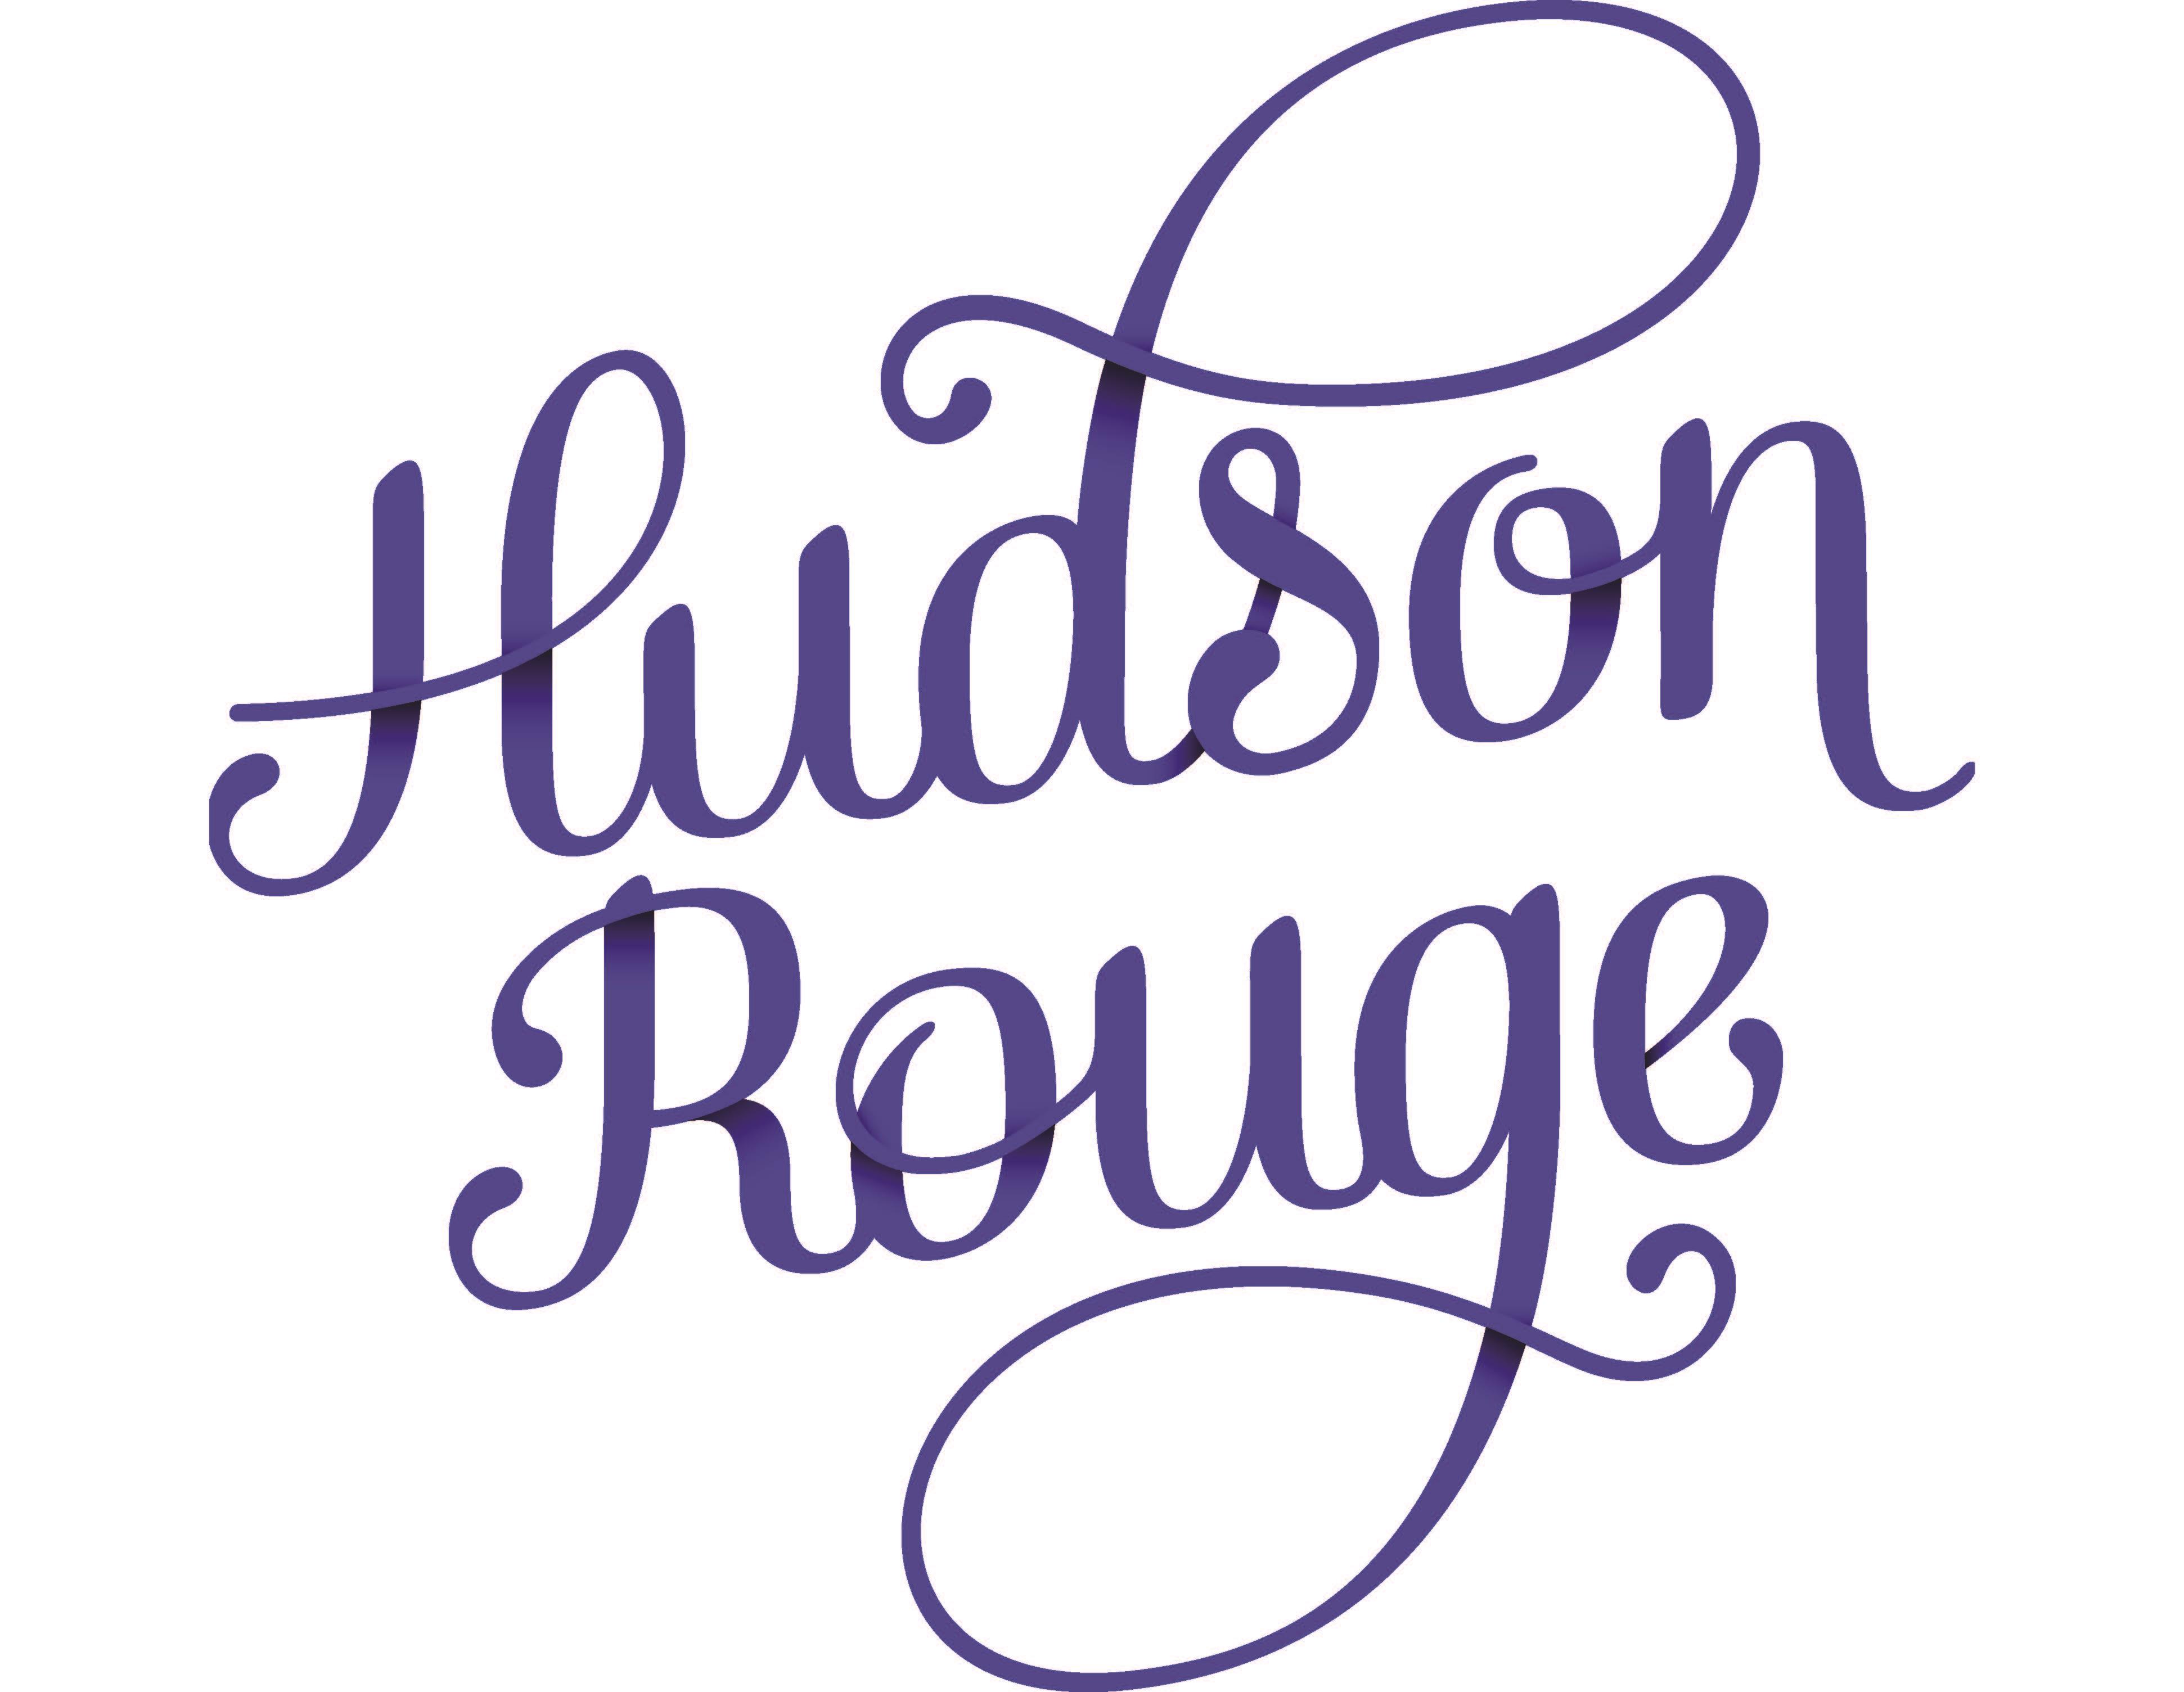 Hudson Rouge